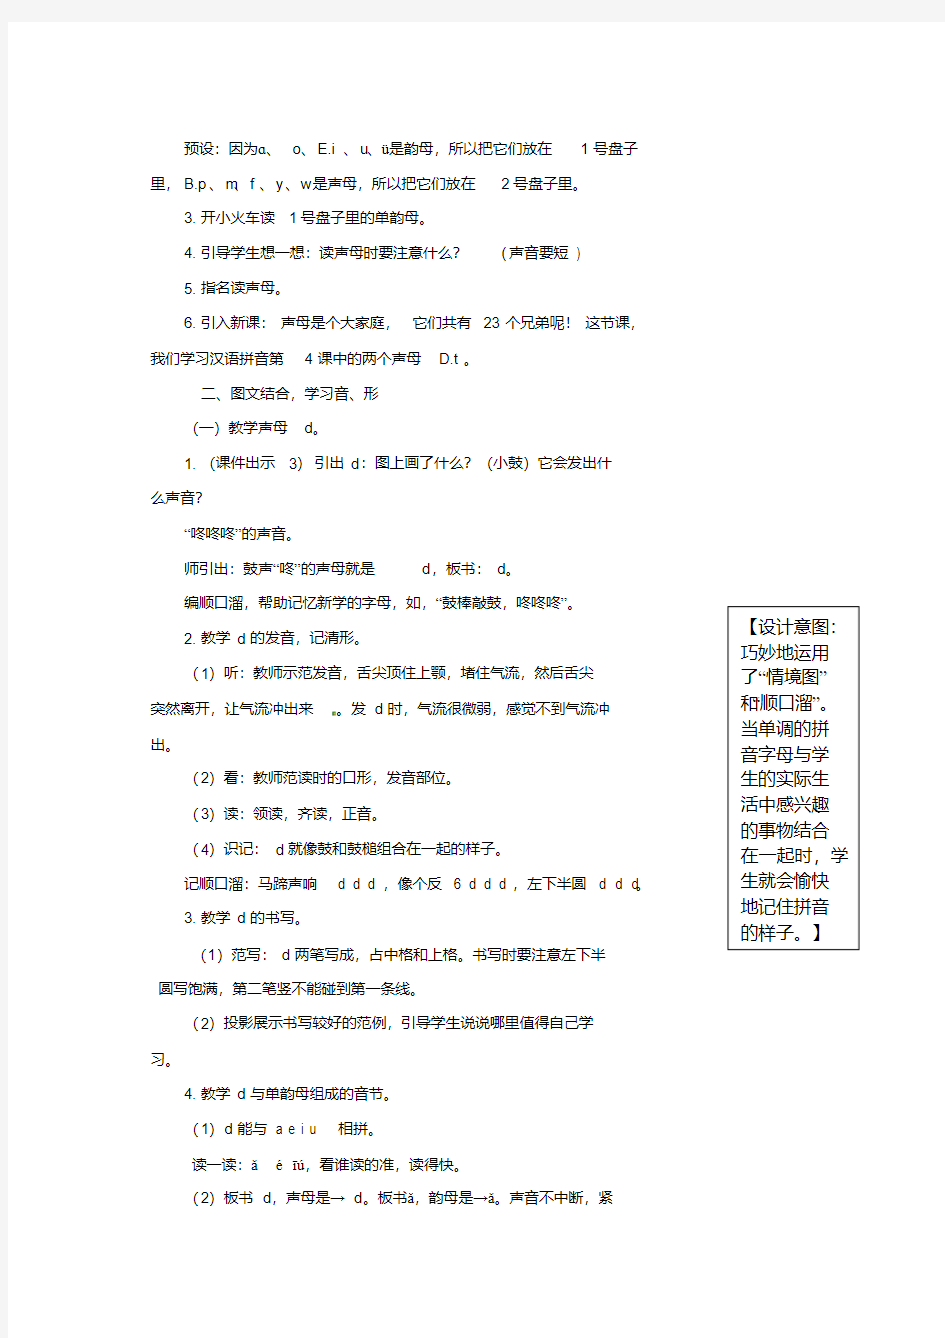 一年级语文上册汉语拼音4《dtnl》教案